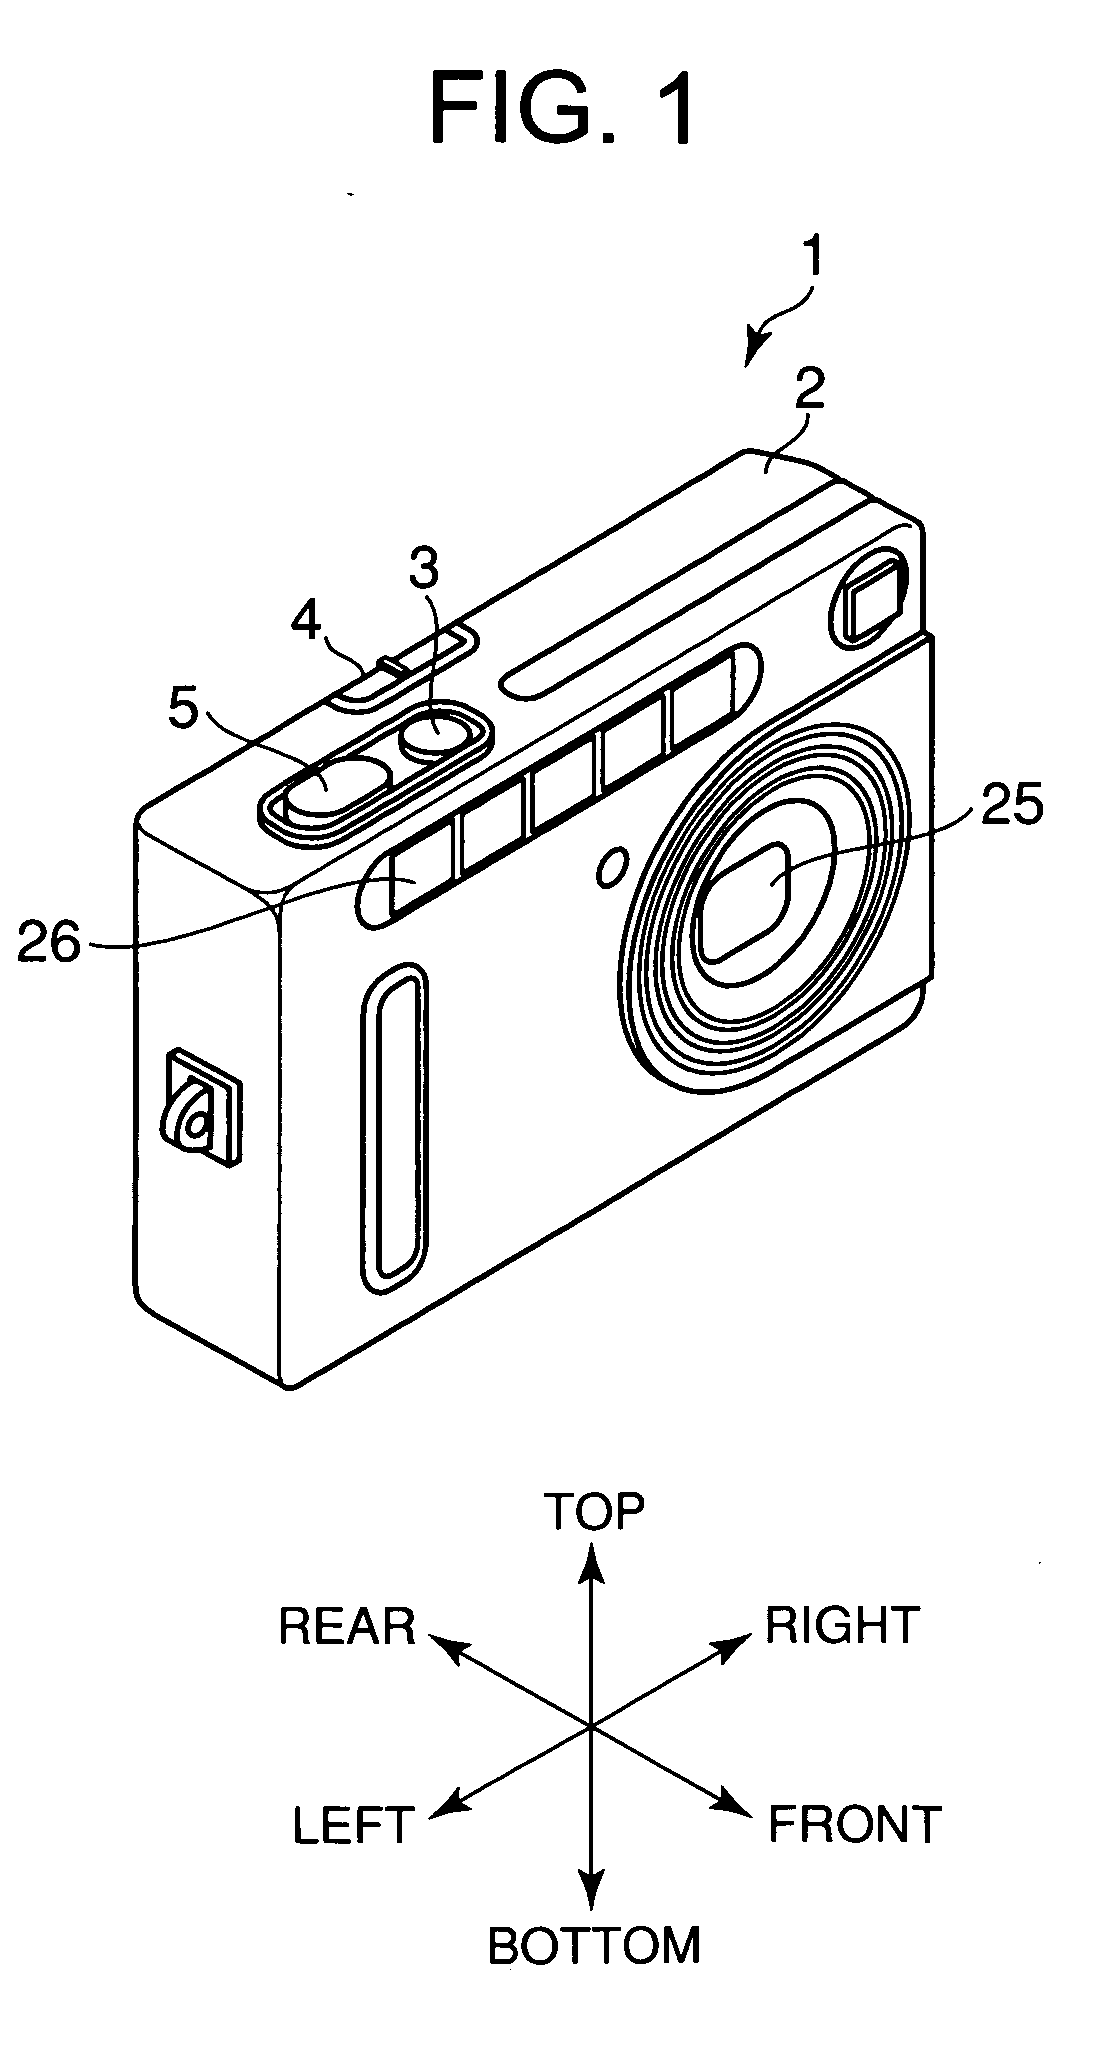 Electronic camera having light-emitting unit